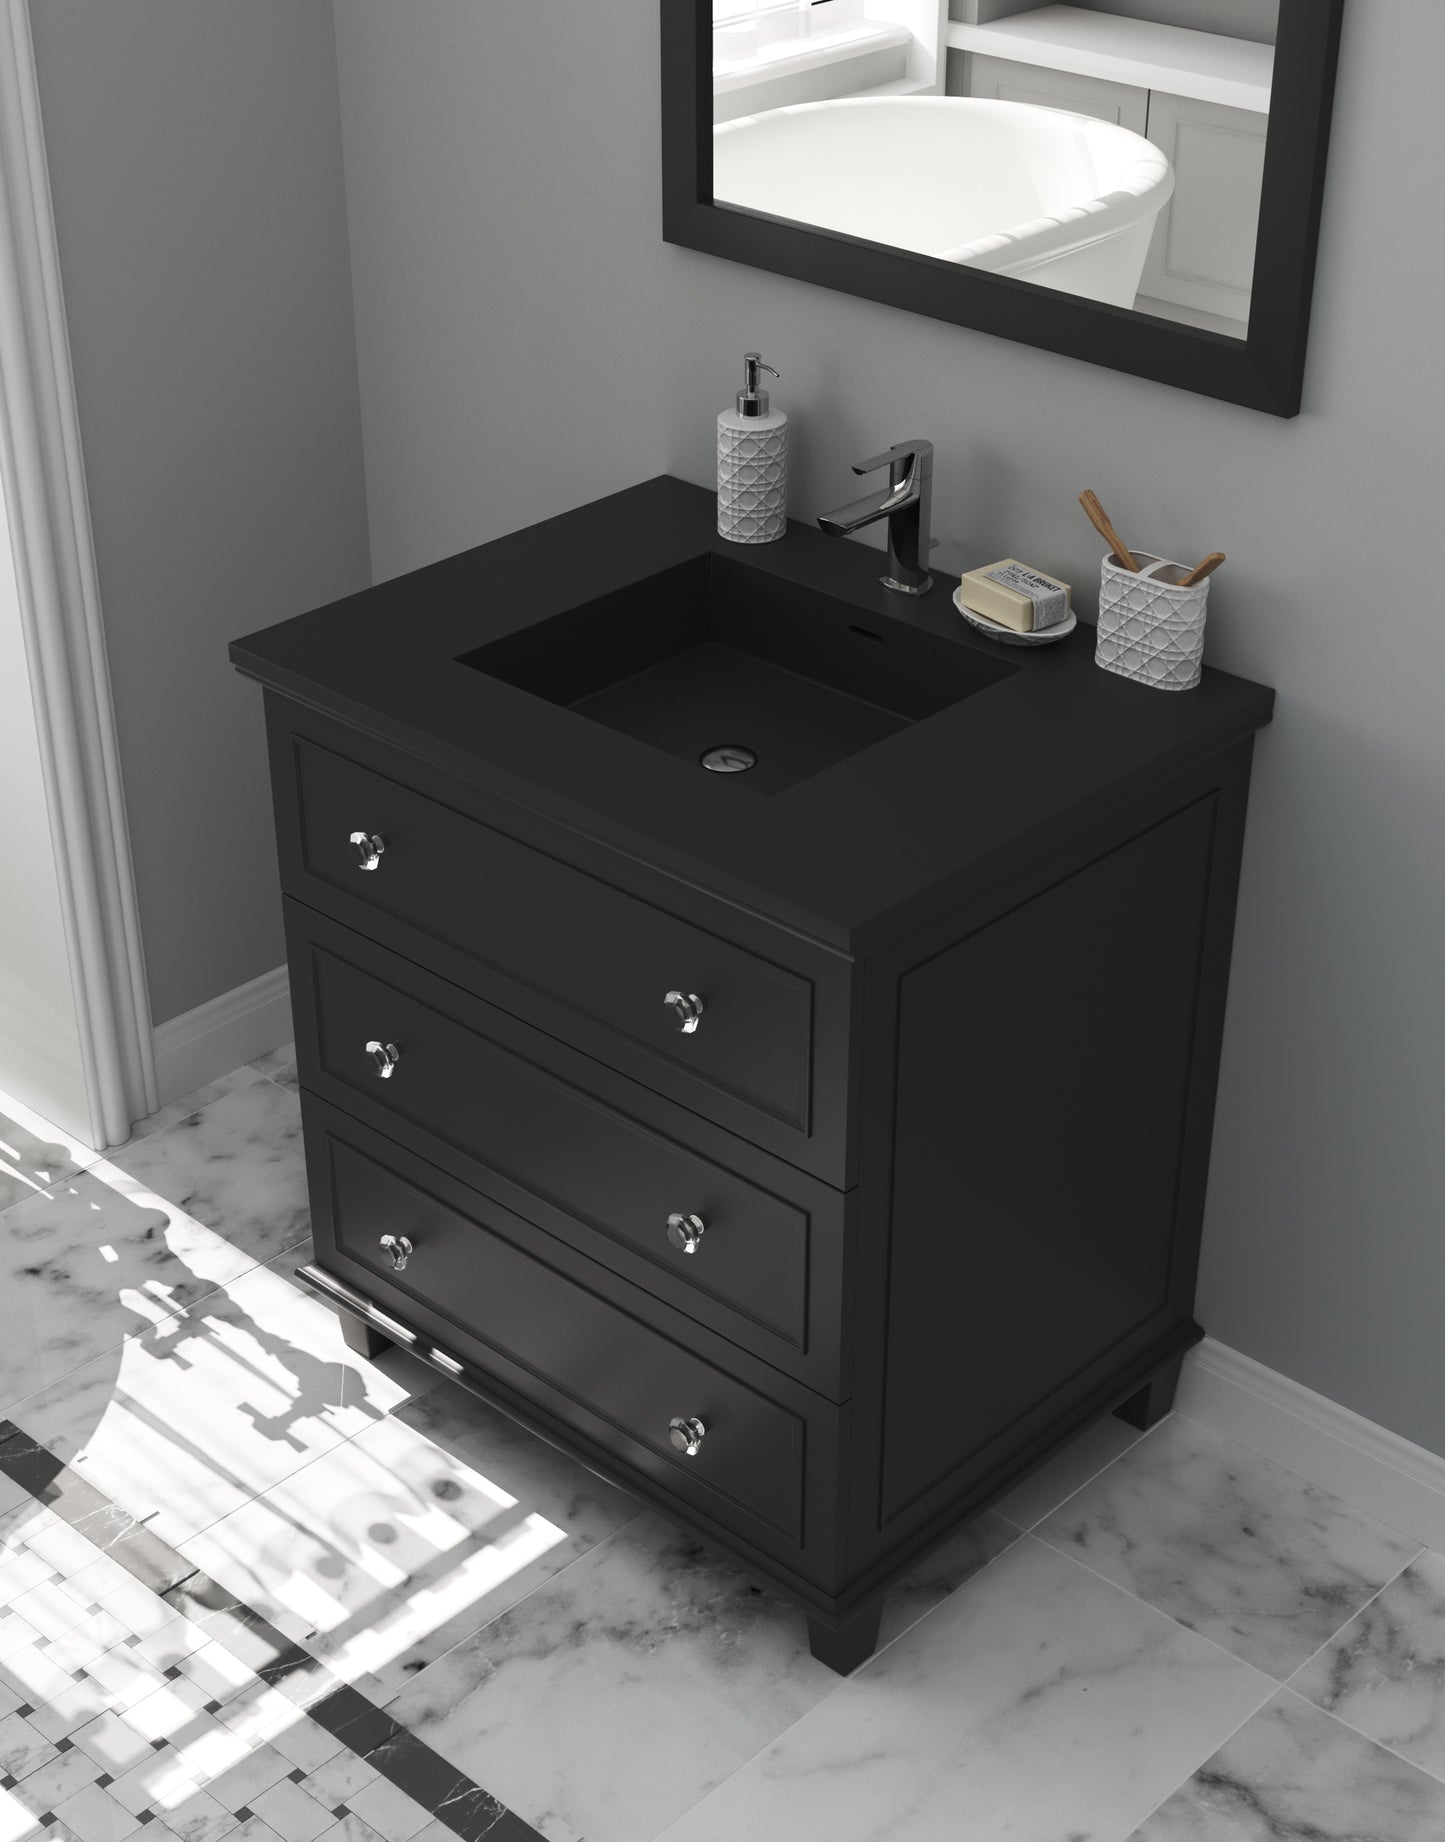 Luna 30" Espresso Bathroom Vanity with Matte Black VIVA Stone Solid Surface Countertop